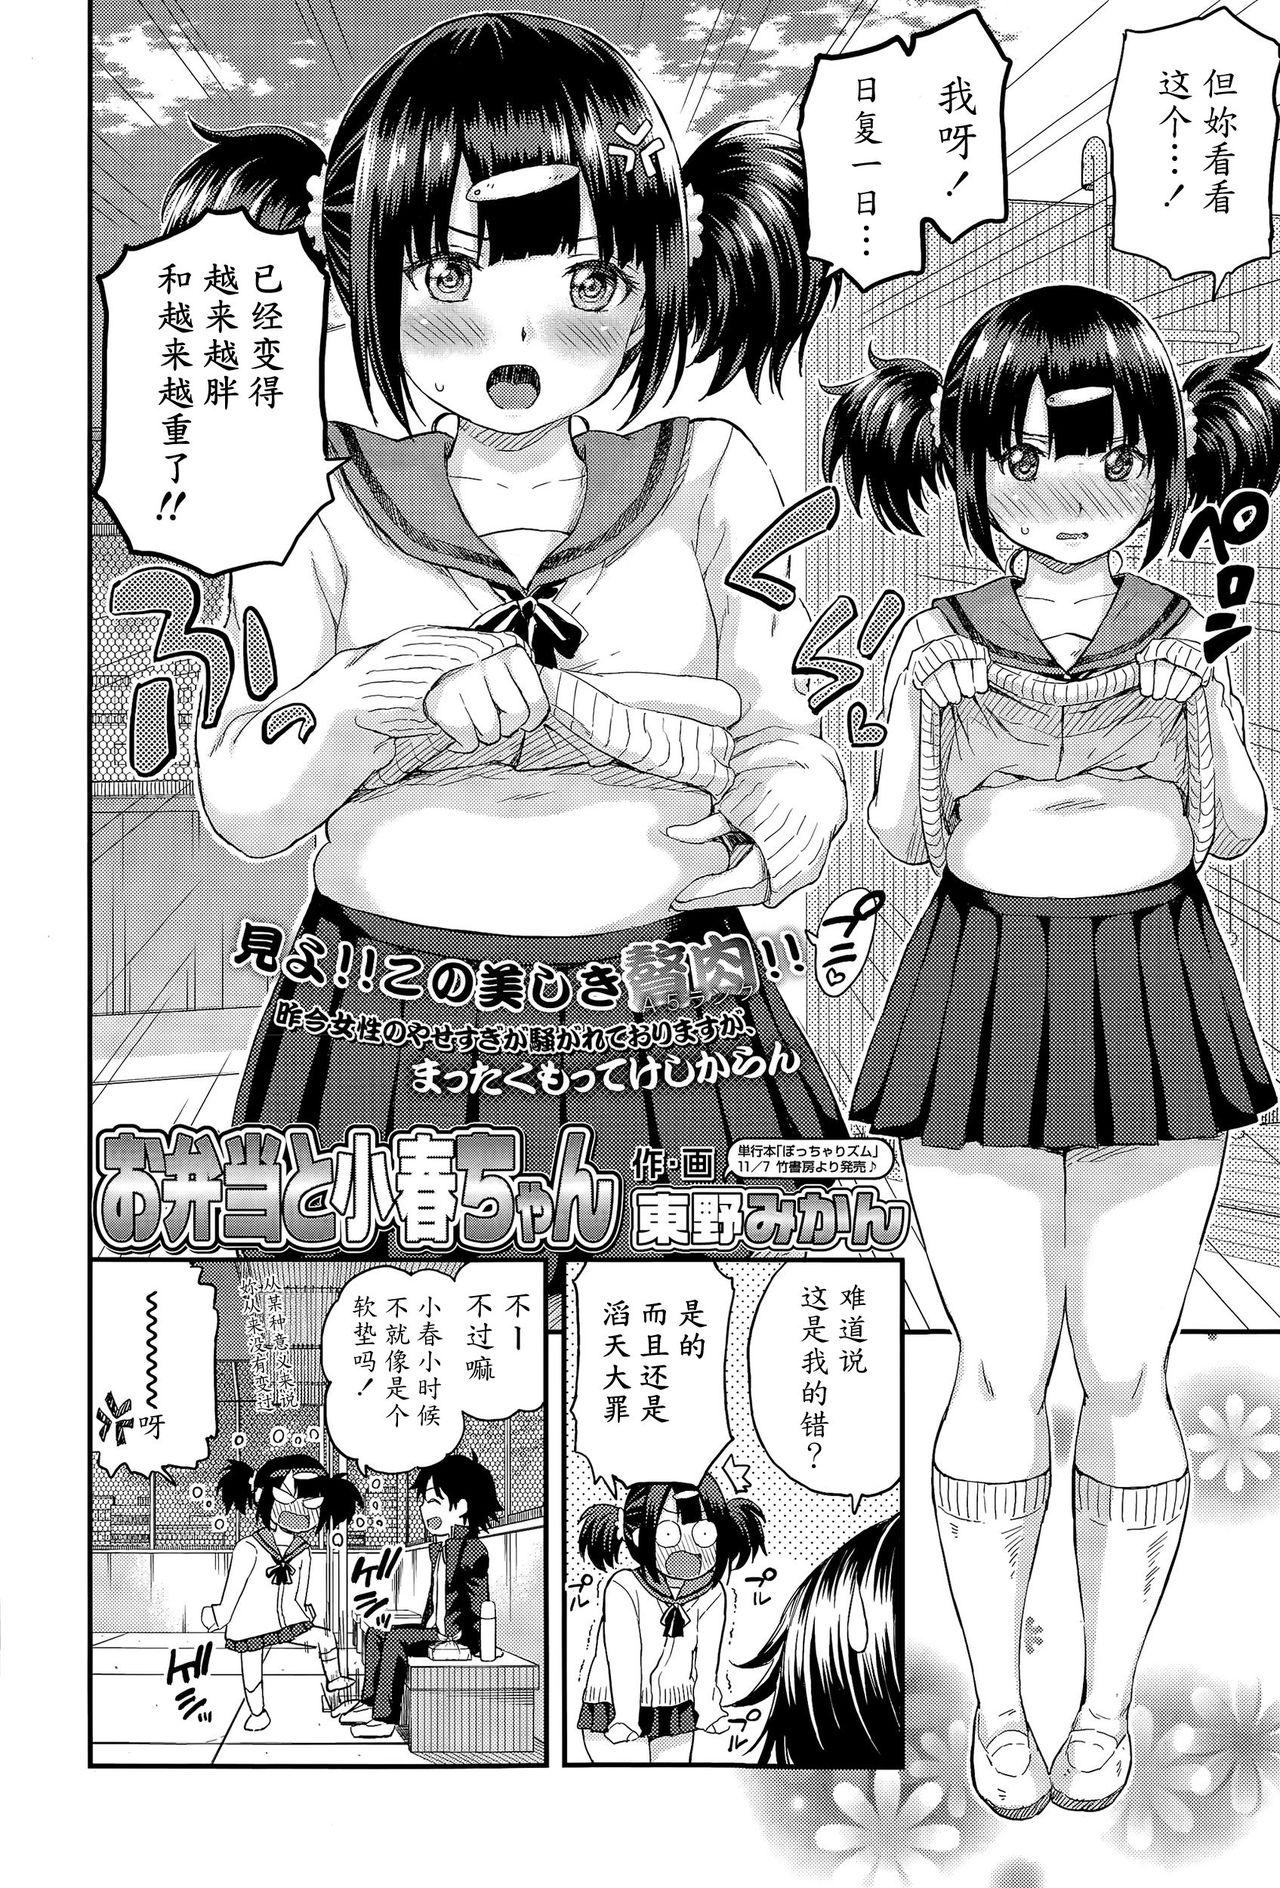 Gordibuena Obentou to Koharu-chan Ameteur Porn - Page 2